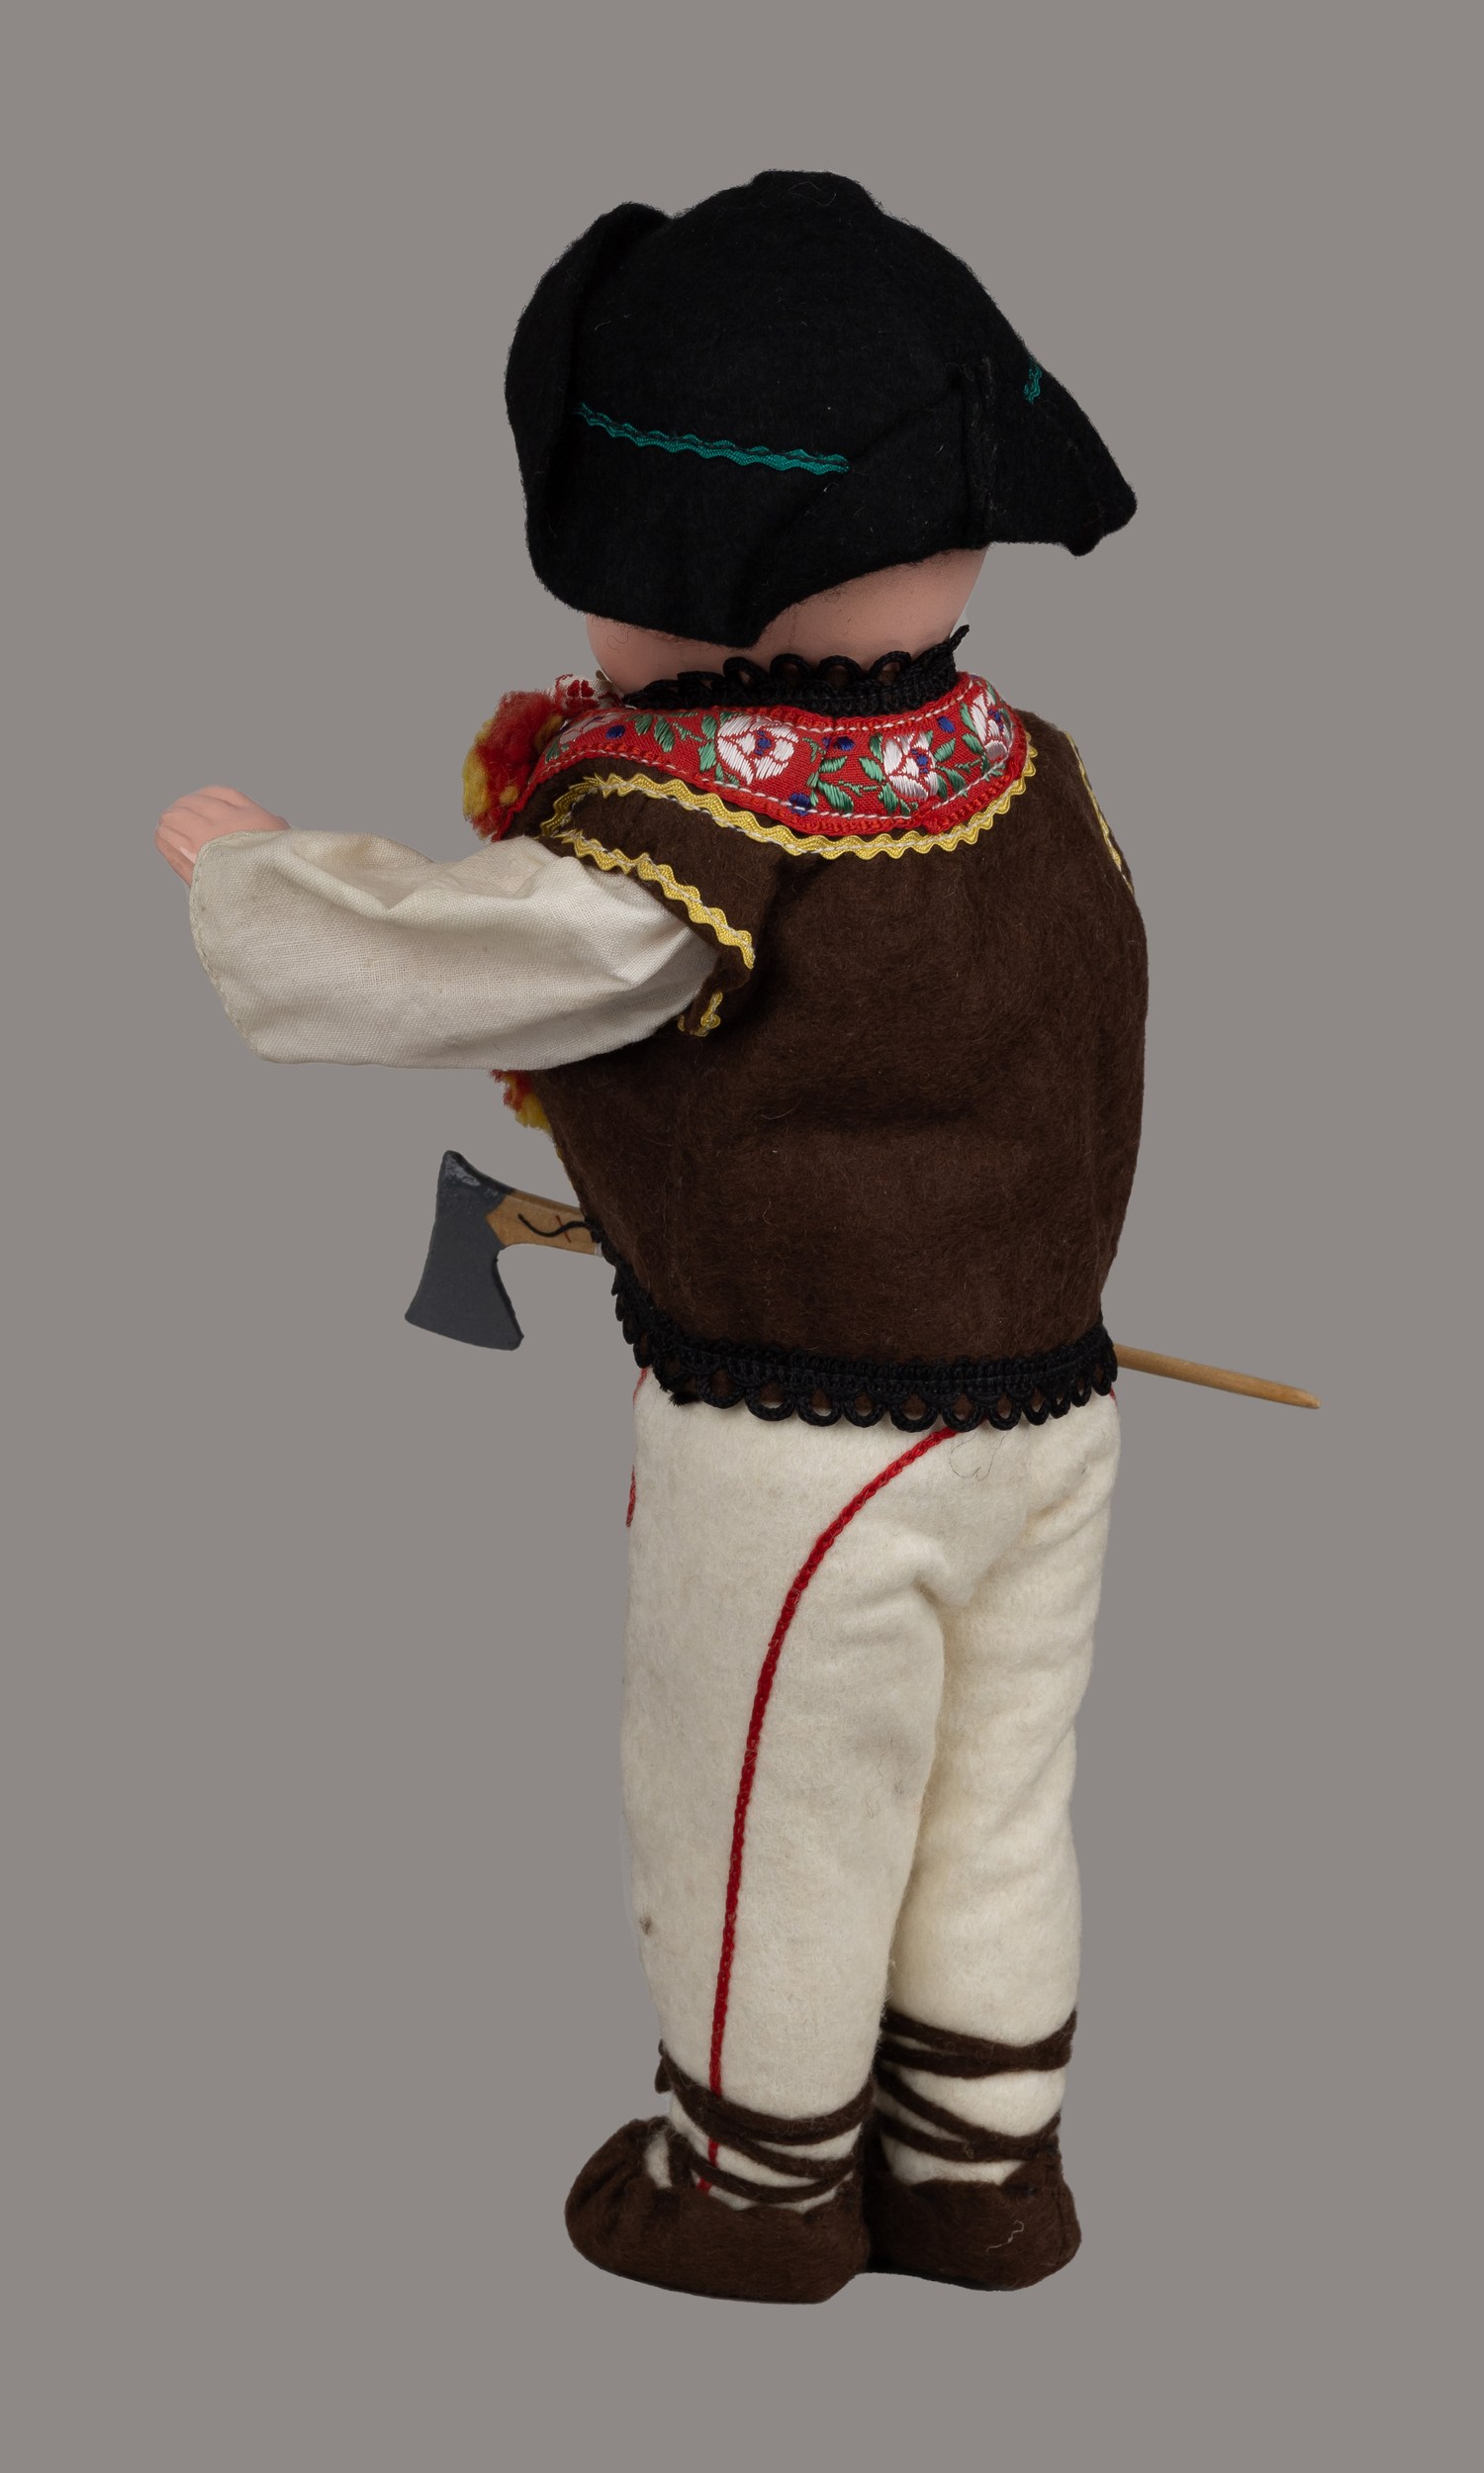 Кукла «Мальчик в национальном костюме гуцула».  <br>СССР, 1960-70-е годы.